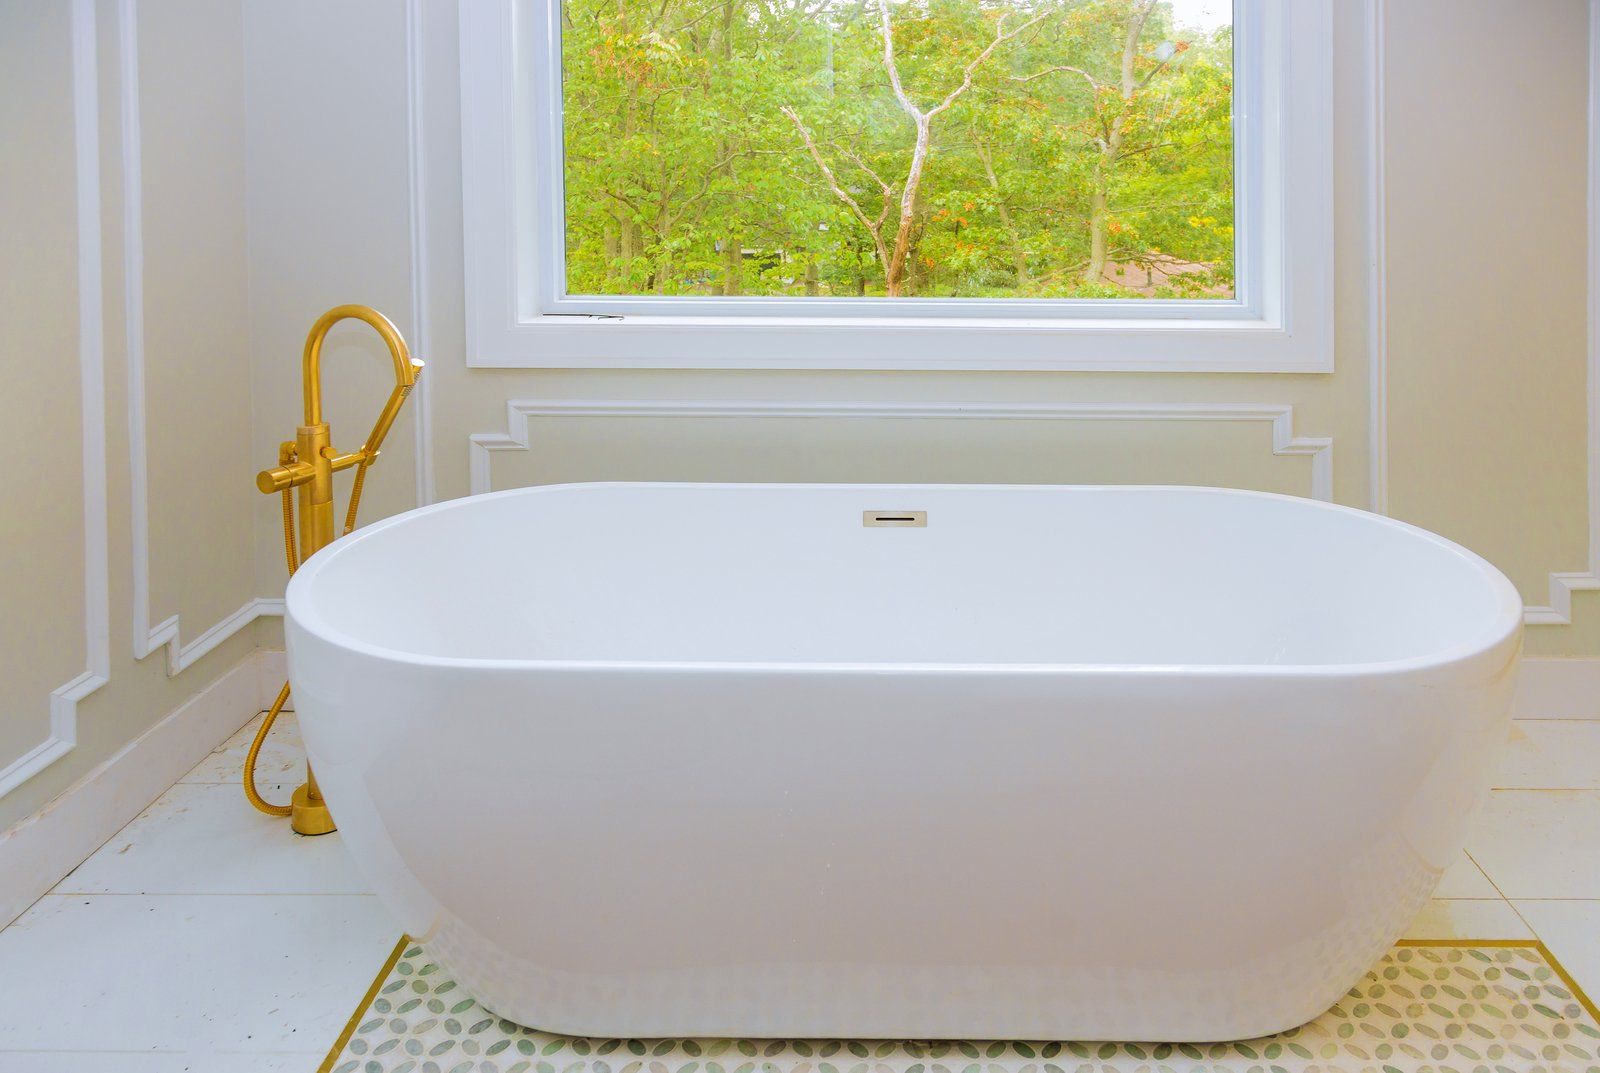 newly cleaned white bathtub